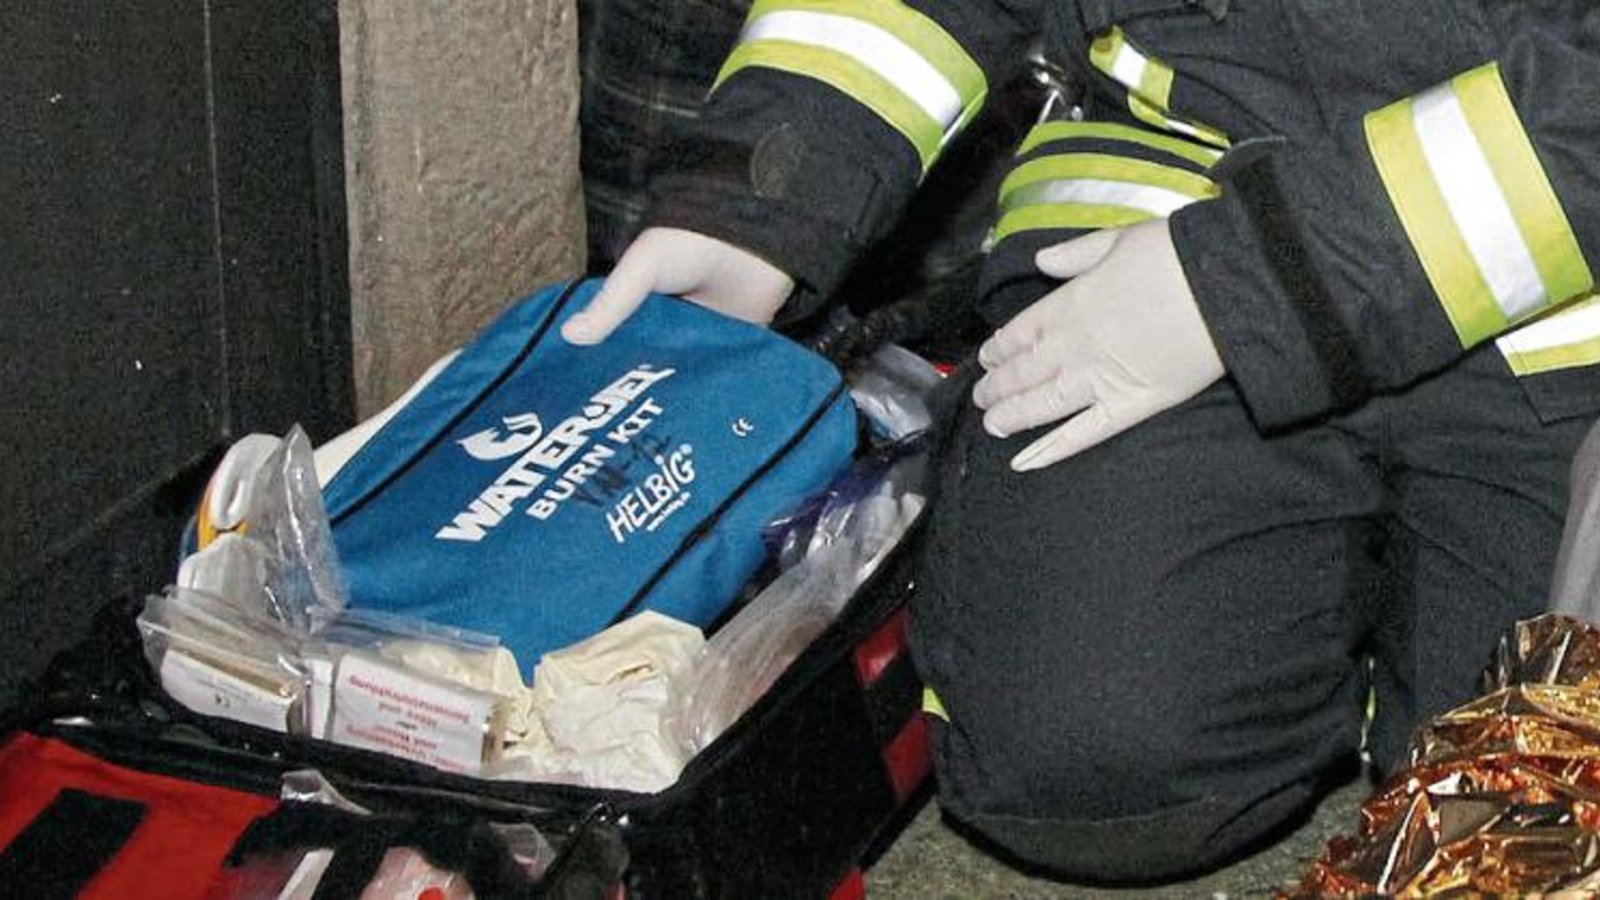 Schutzhandschuhe sind für die Feuerwehr bei Übung und Einsatz selbstverständlich.  Foto: Archiv